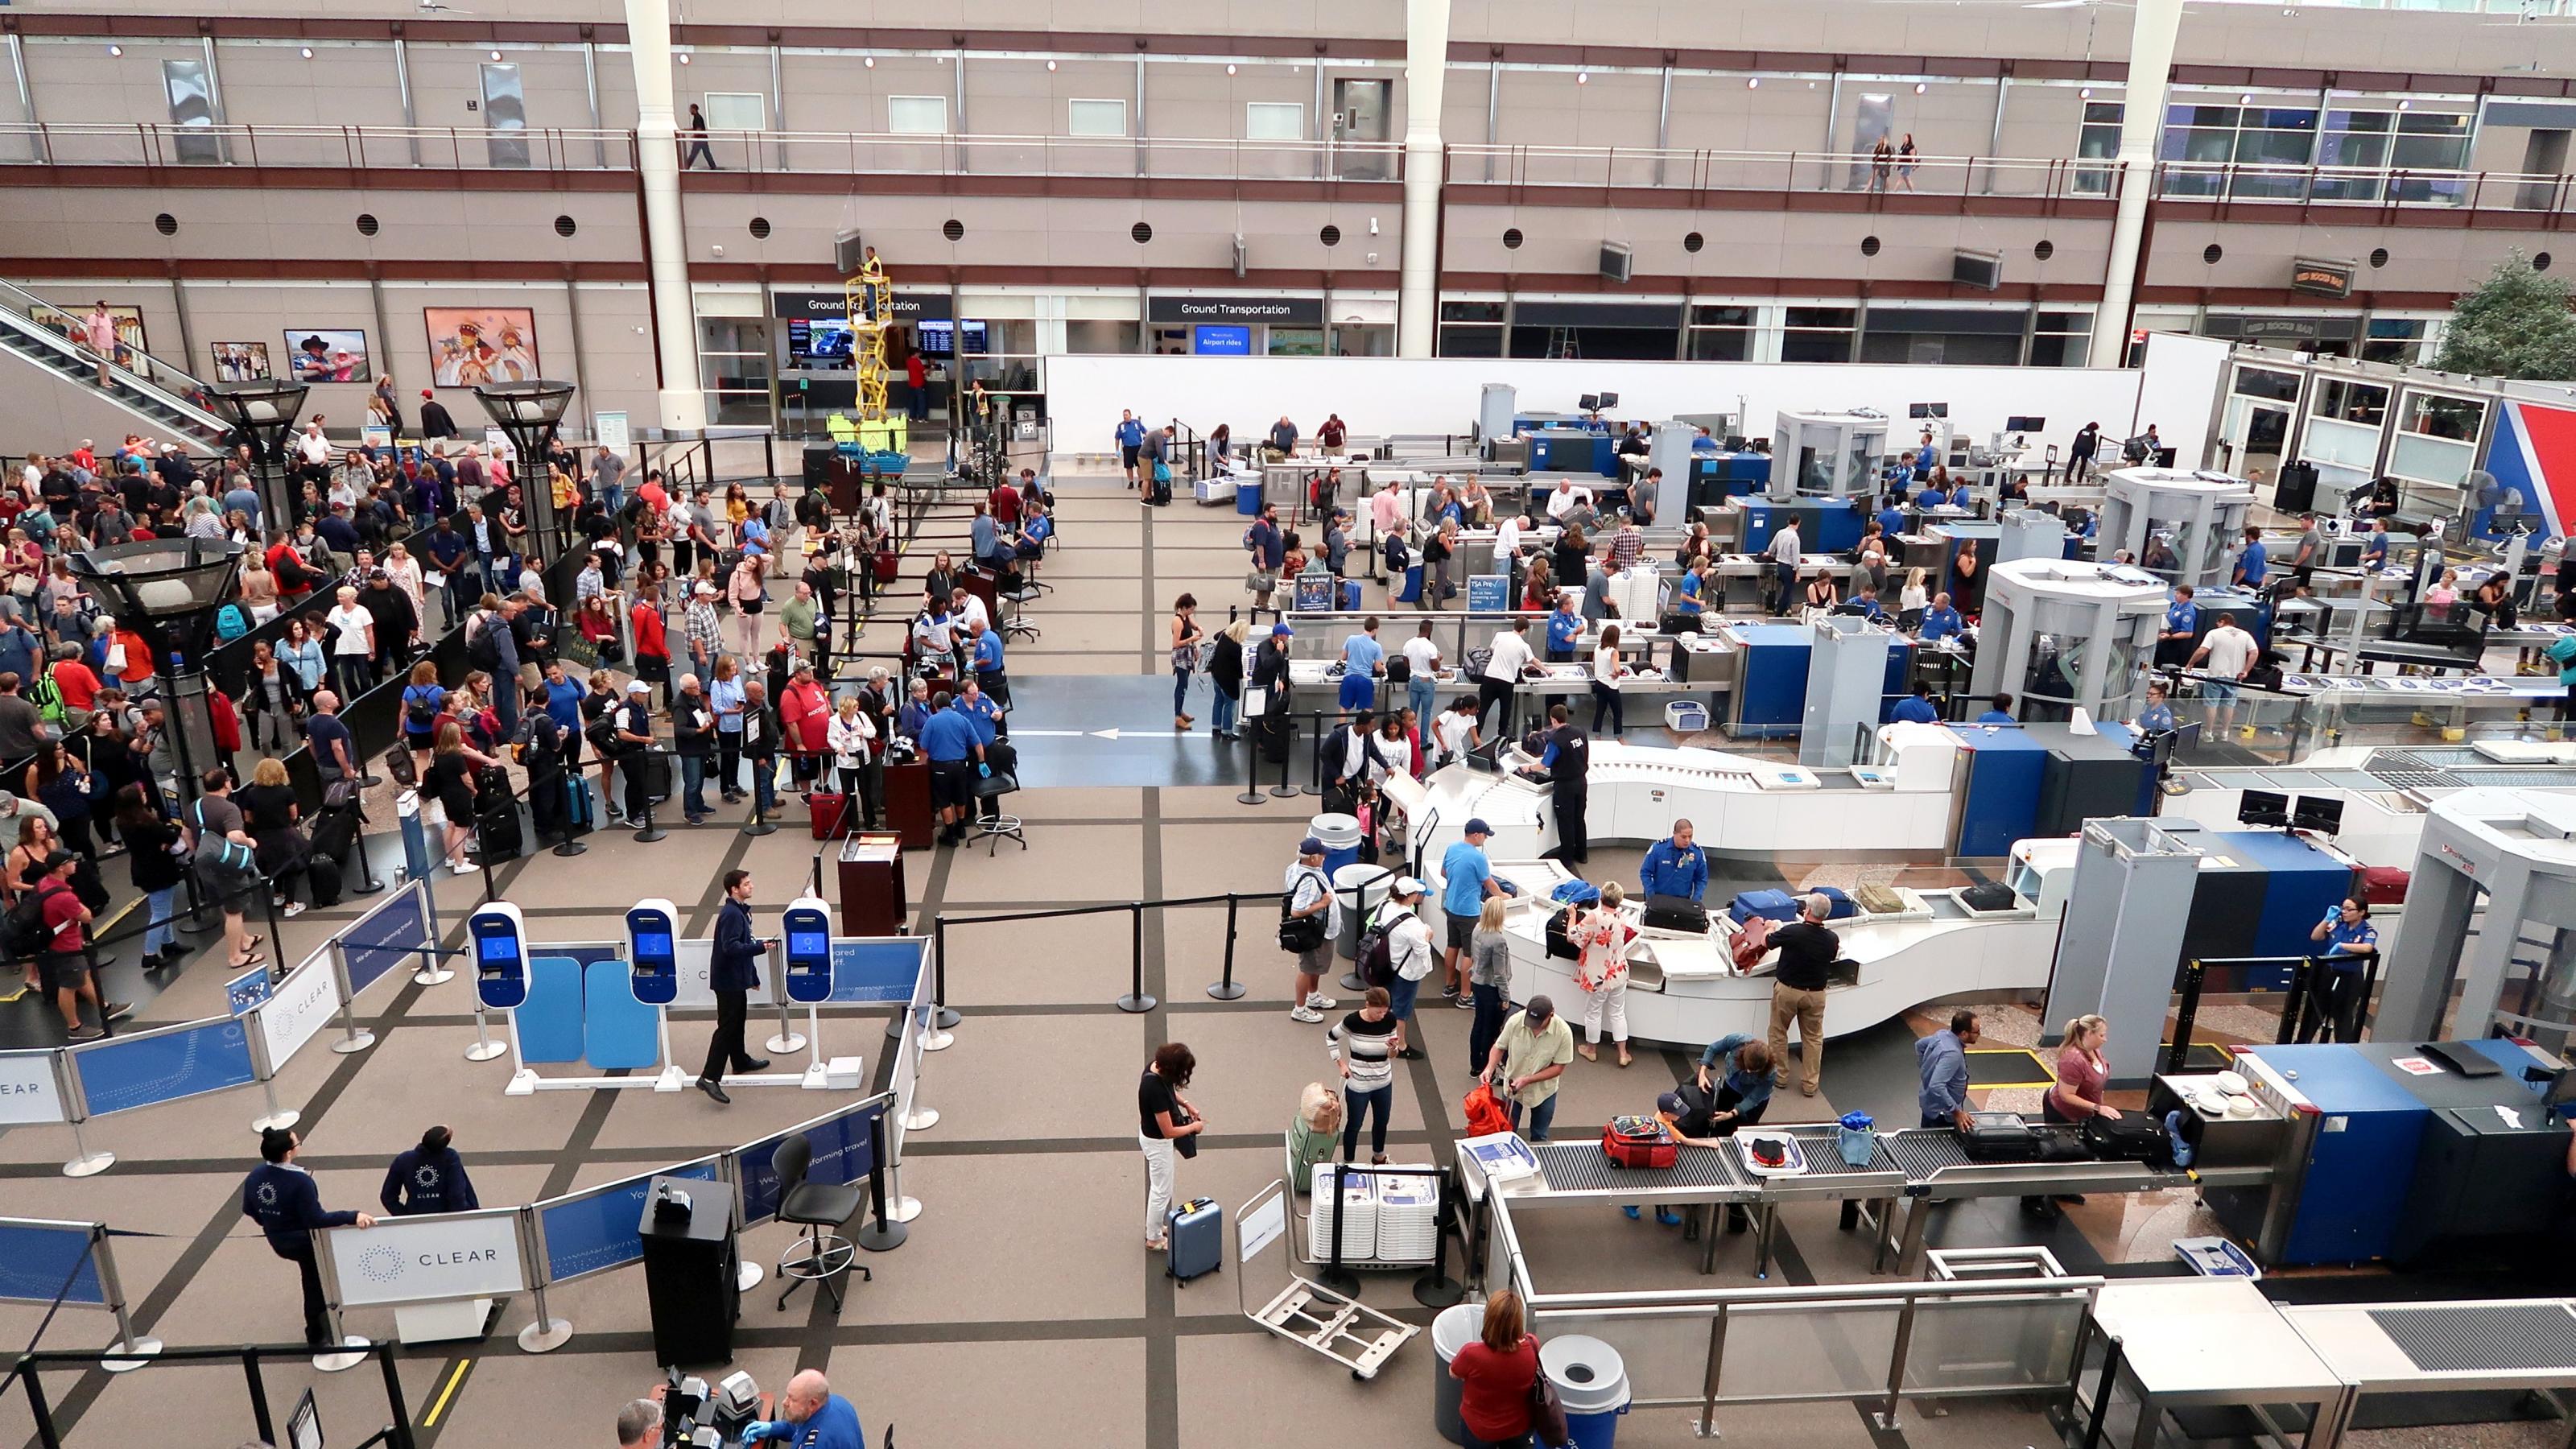 Eine lange Schlange von Menschen wartet vor den Metalldetektoren am Flughafen darauf, kontrolliert zu werden